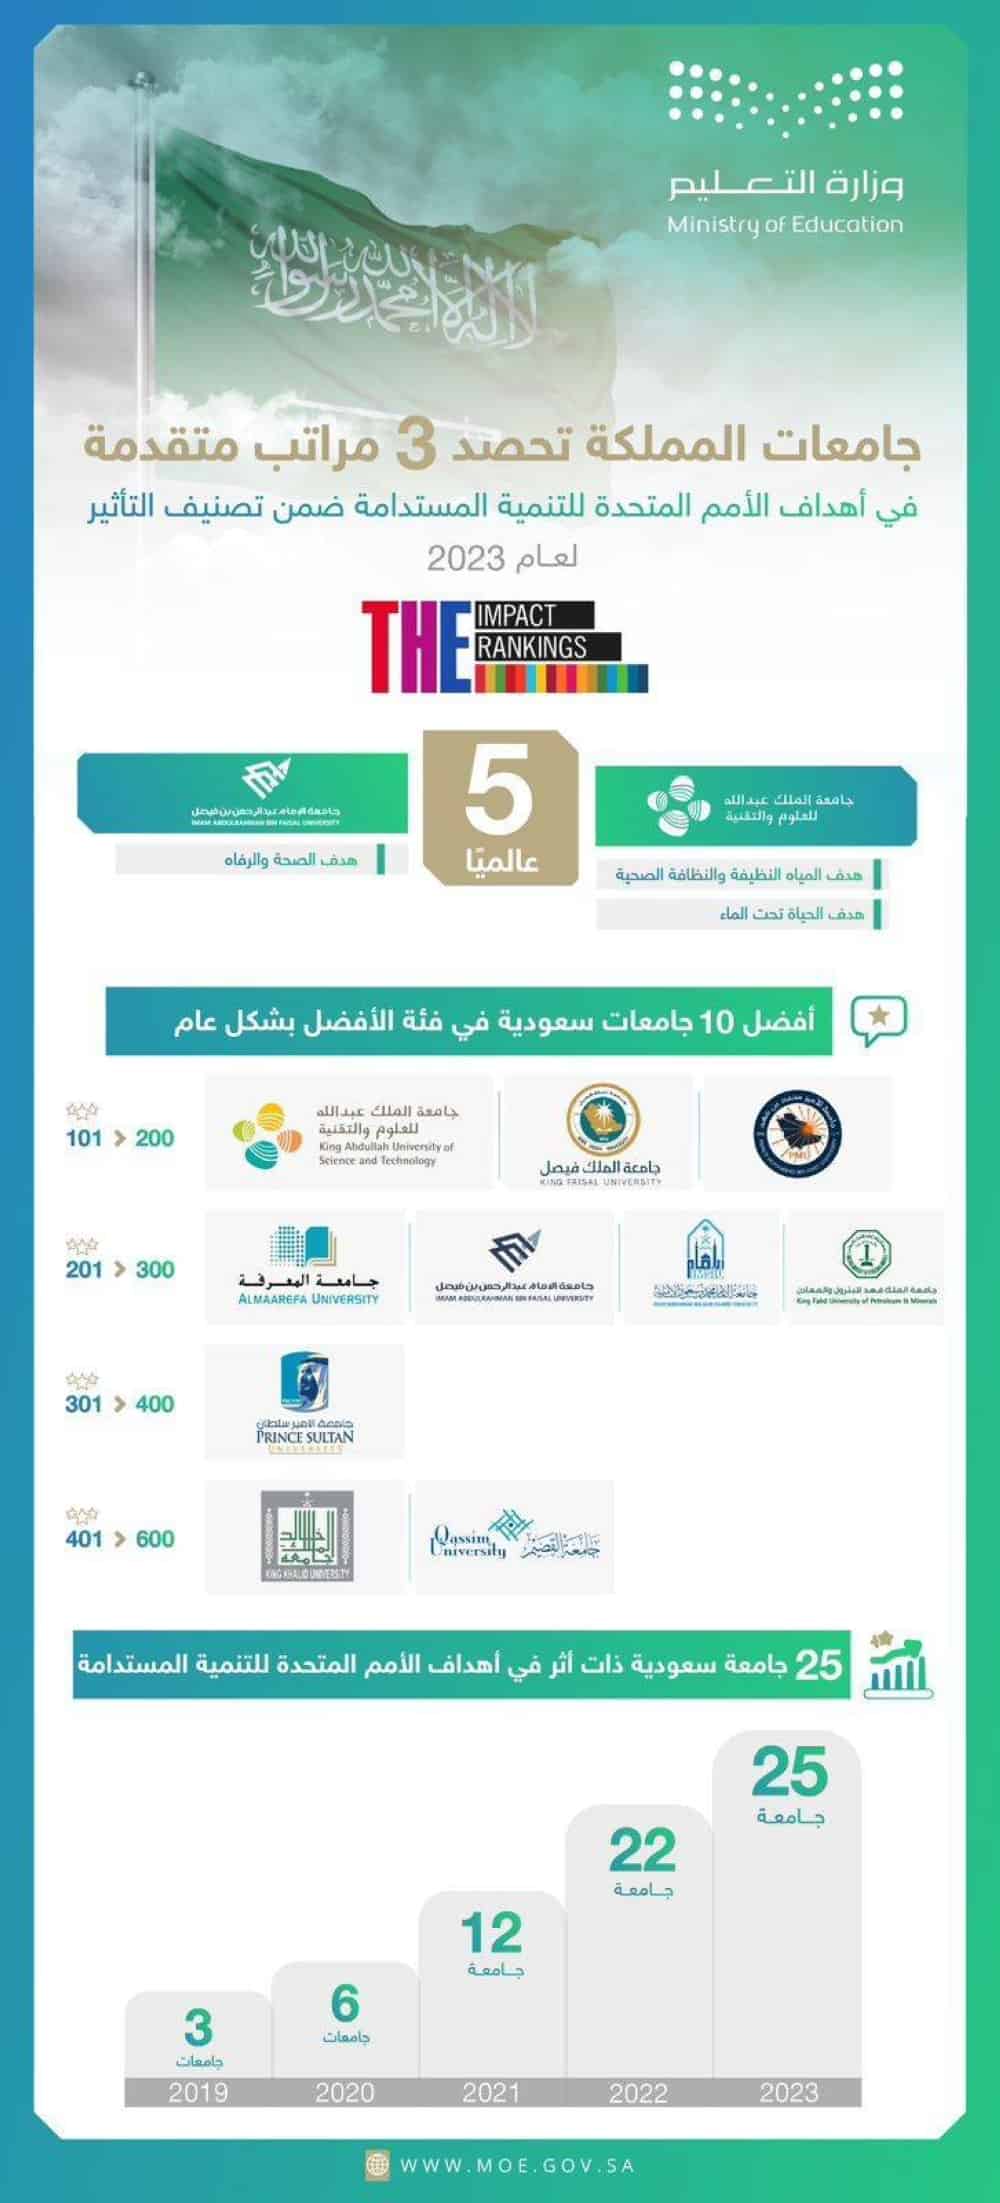 25 جامعة سعودية في التصنيف العالمي للجامعات ذات التأثير في تحقيق أهداف التنمية المستدامة 